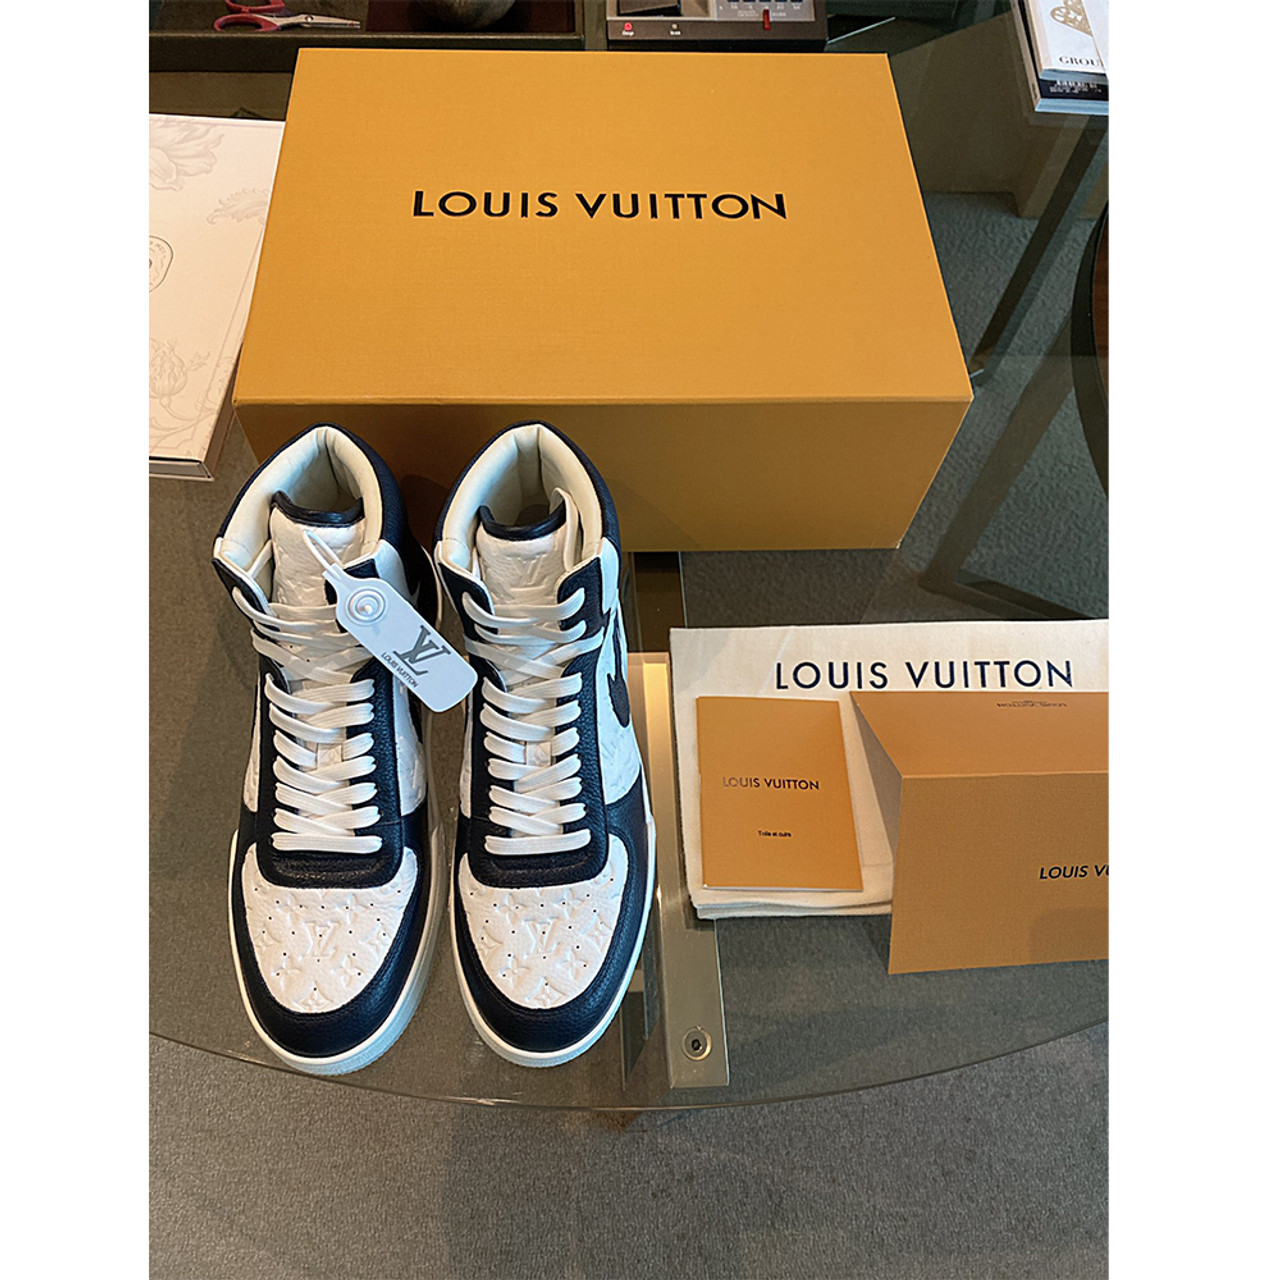 Framed Sneaker Air Jordan 1 Retro High Louis Vuitton (1) - - Catawiki